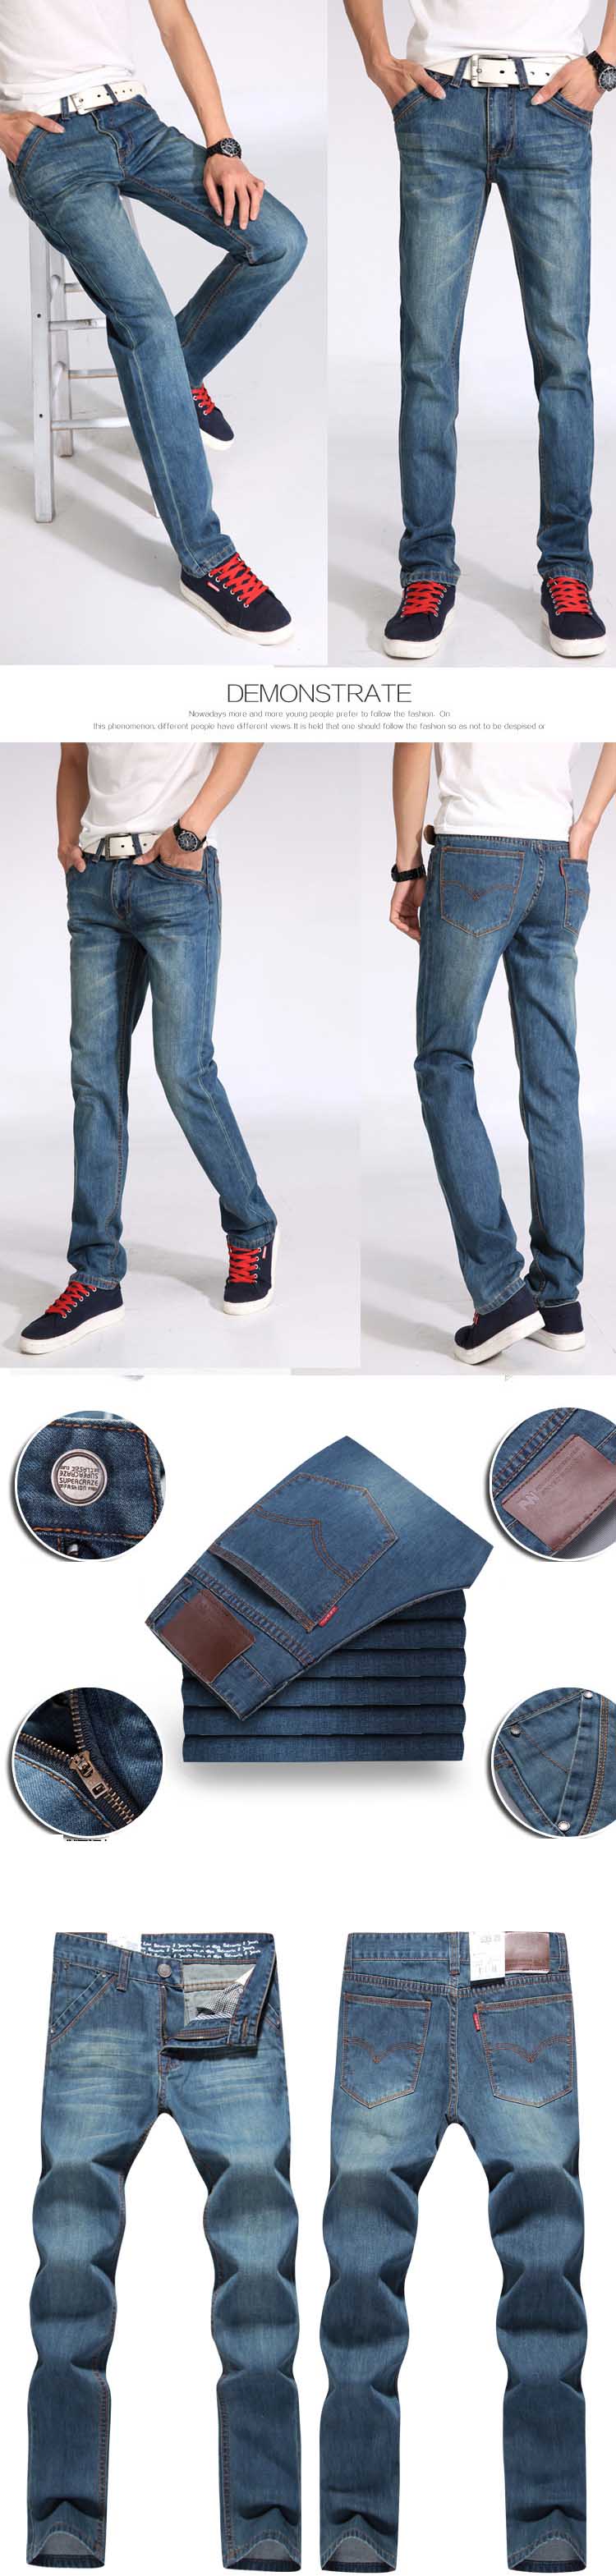 jual celana jeans pria model panjang, temukan koleksi celana jeans panjang pria terlengkap dengan kualitas terbaik haya di store.pakaianfashionpria.com